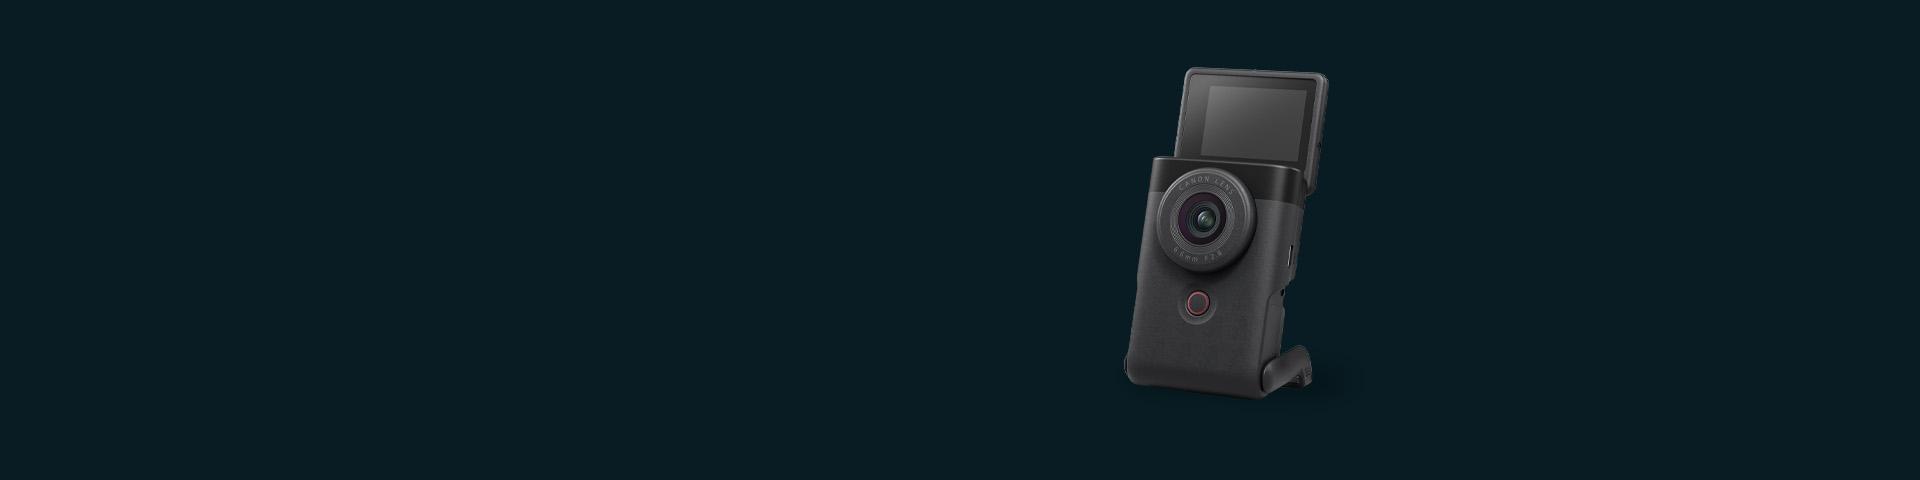 올인원 브이로그 카메라 PowerShot V10